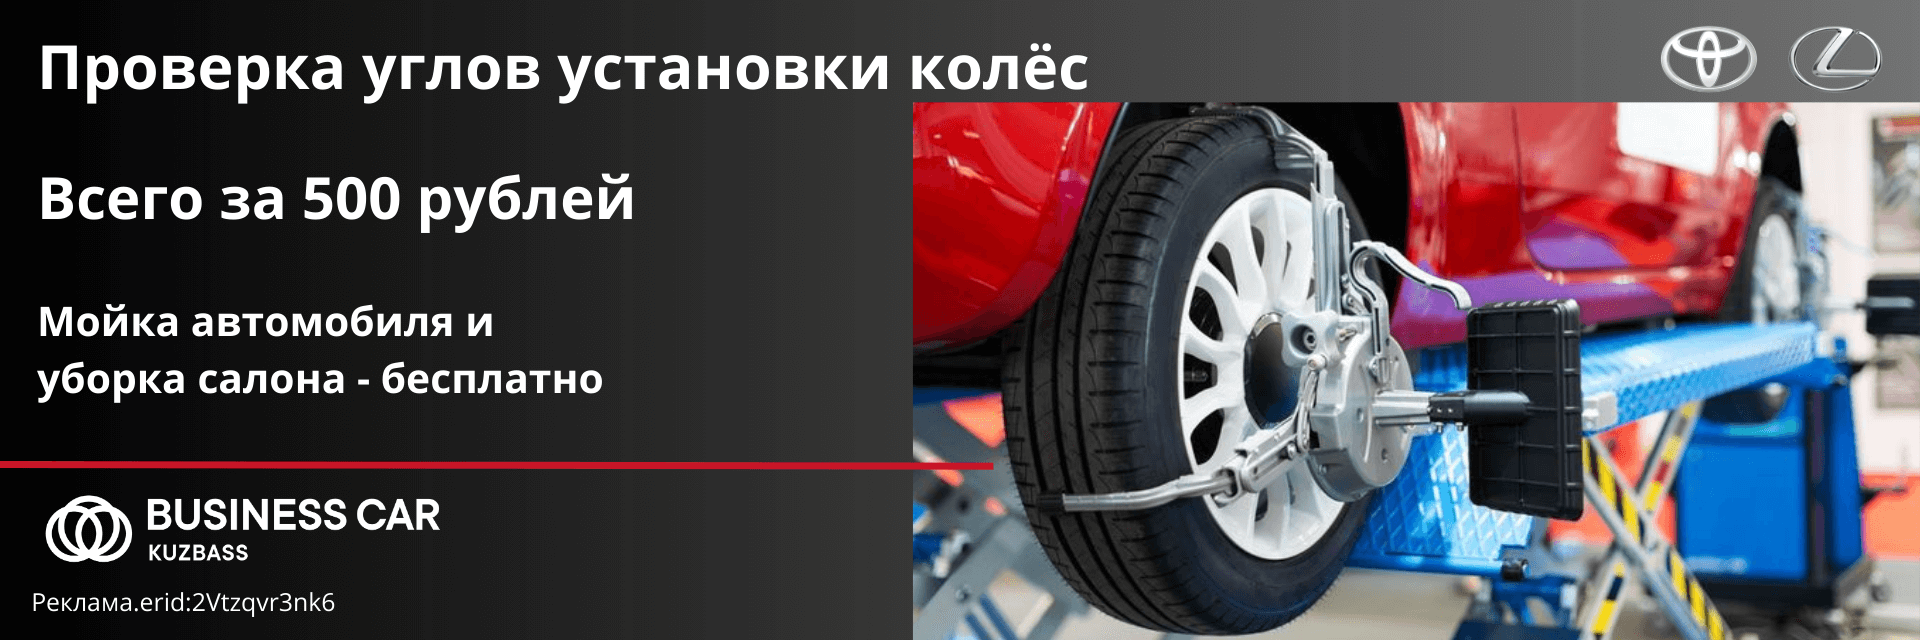 Проверка углов установки колес за 500 рублей